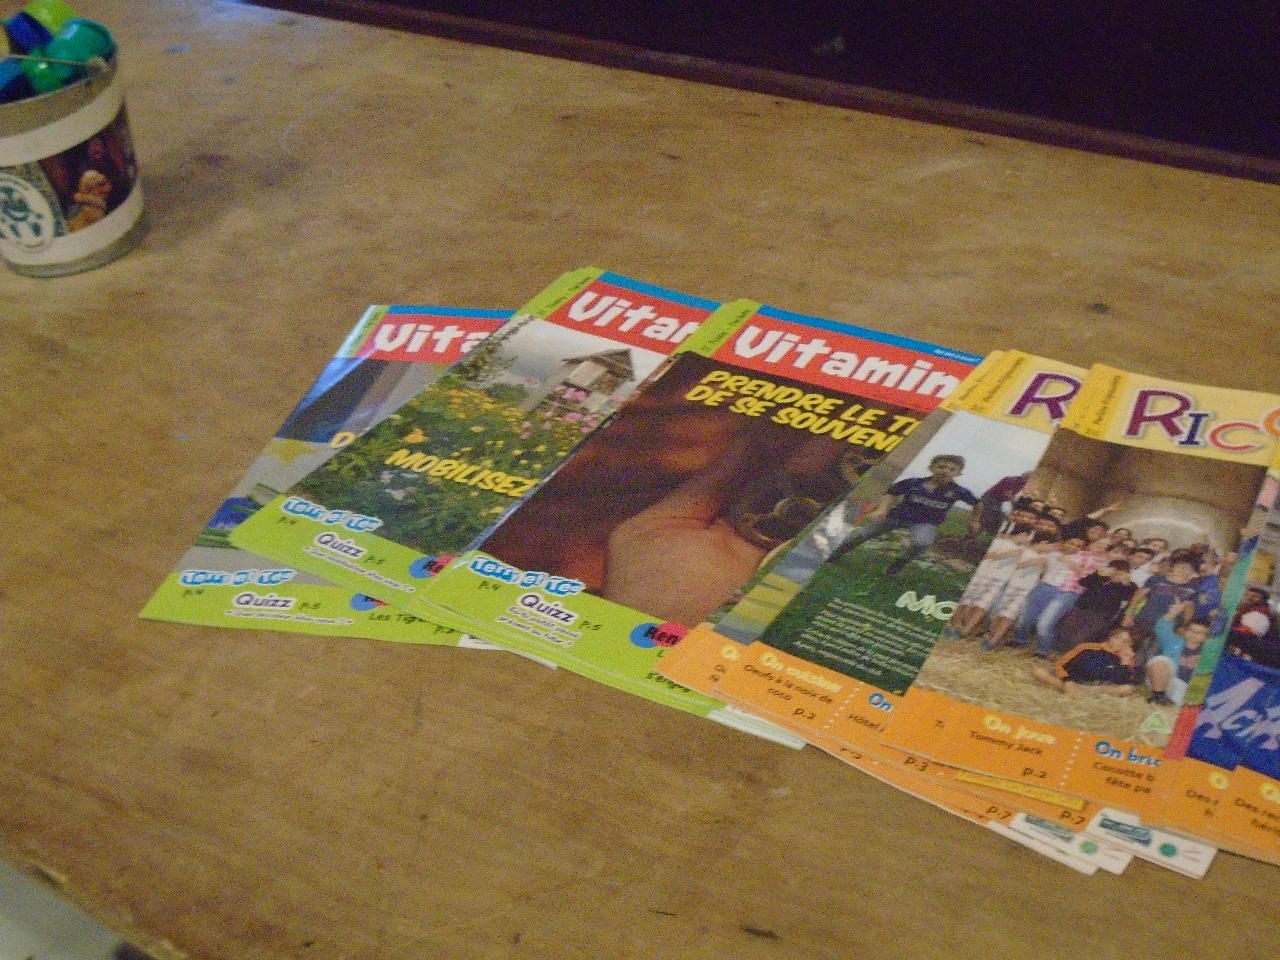 Dans la salle, la table pour consulter les magazines trimestriels que les enfants reçoivent, selon leur âge, par leur inscription à l'ACE